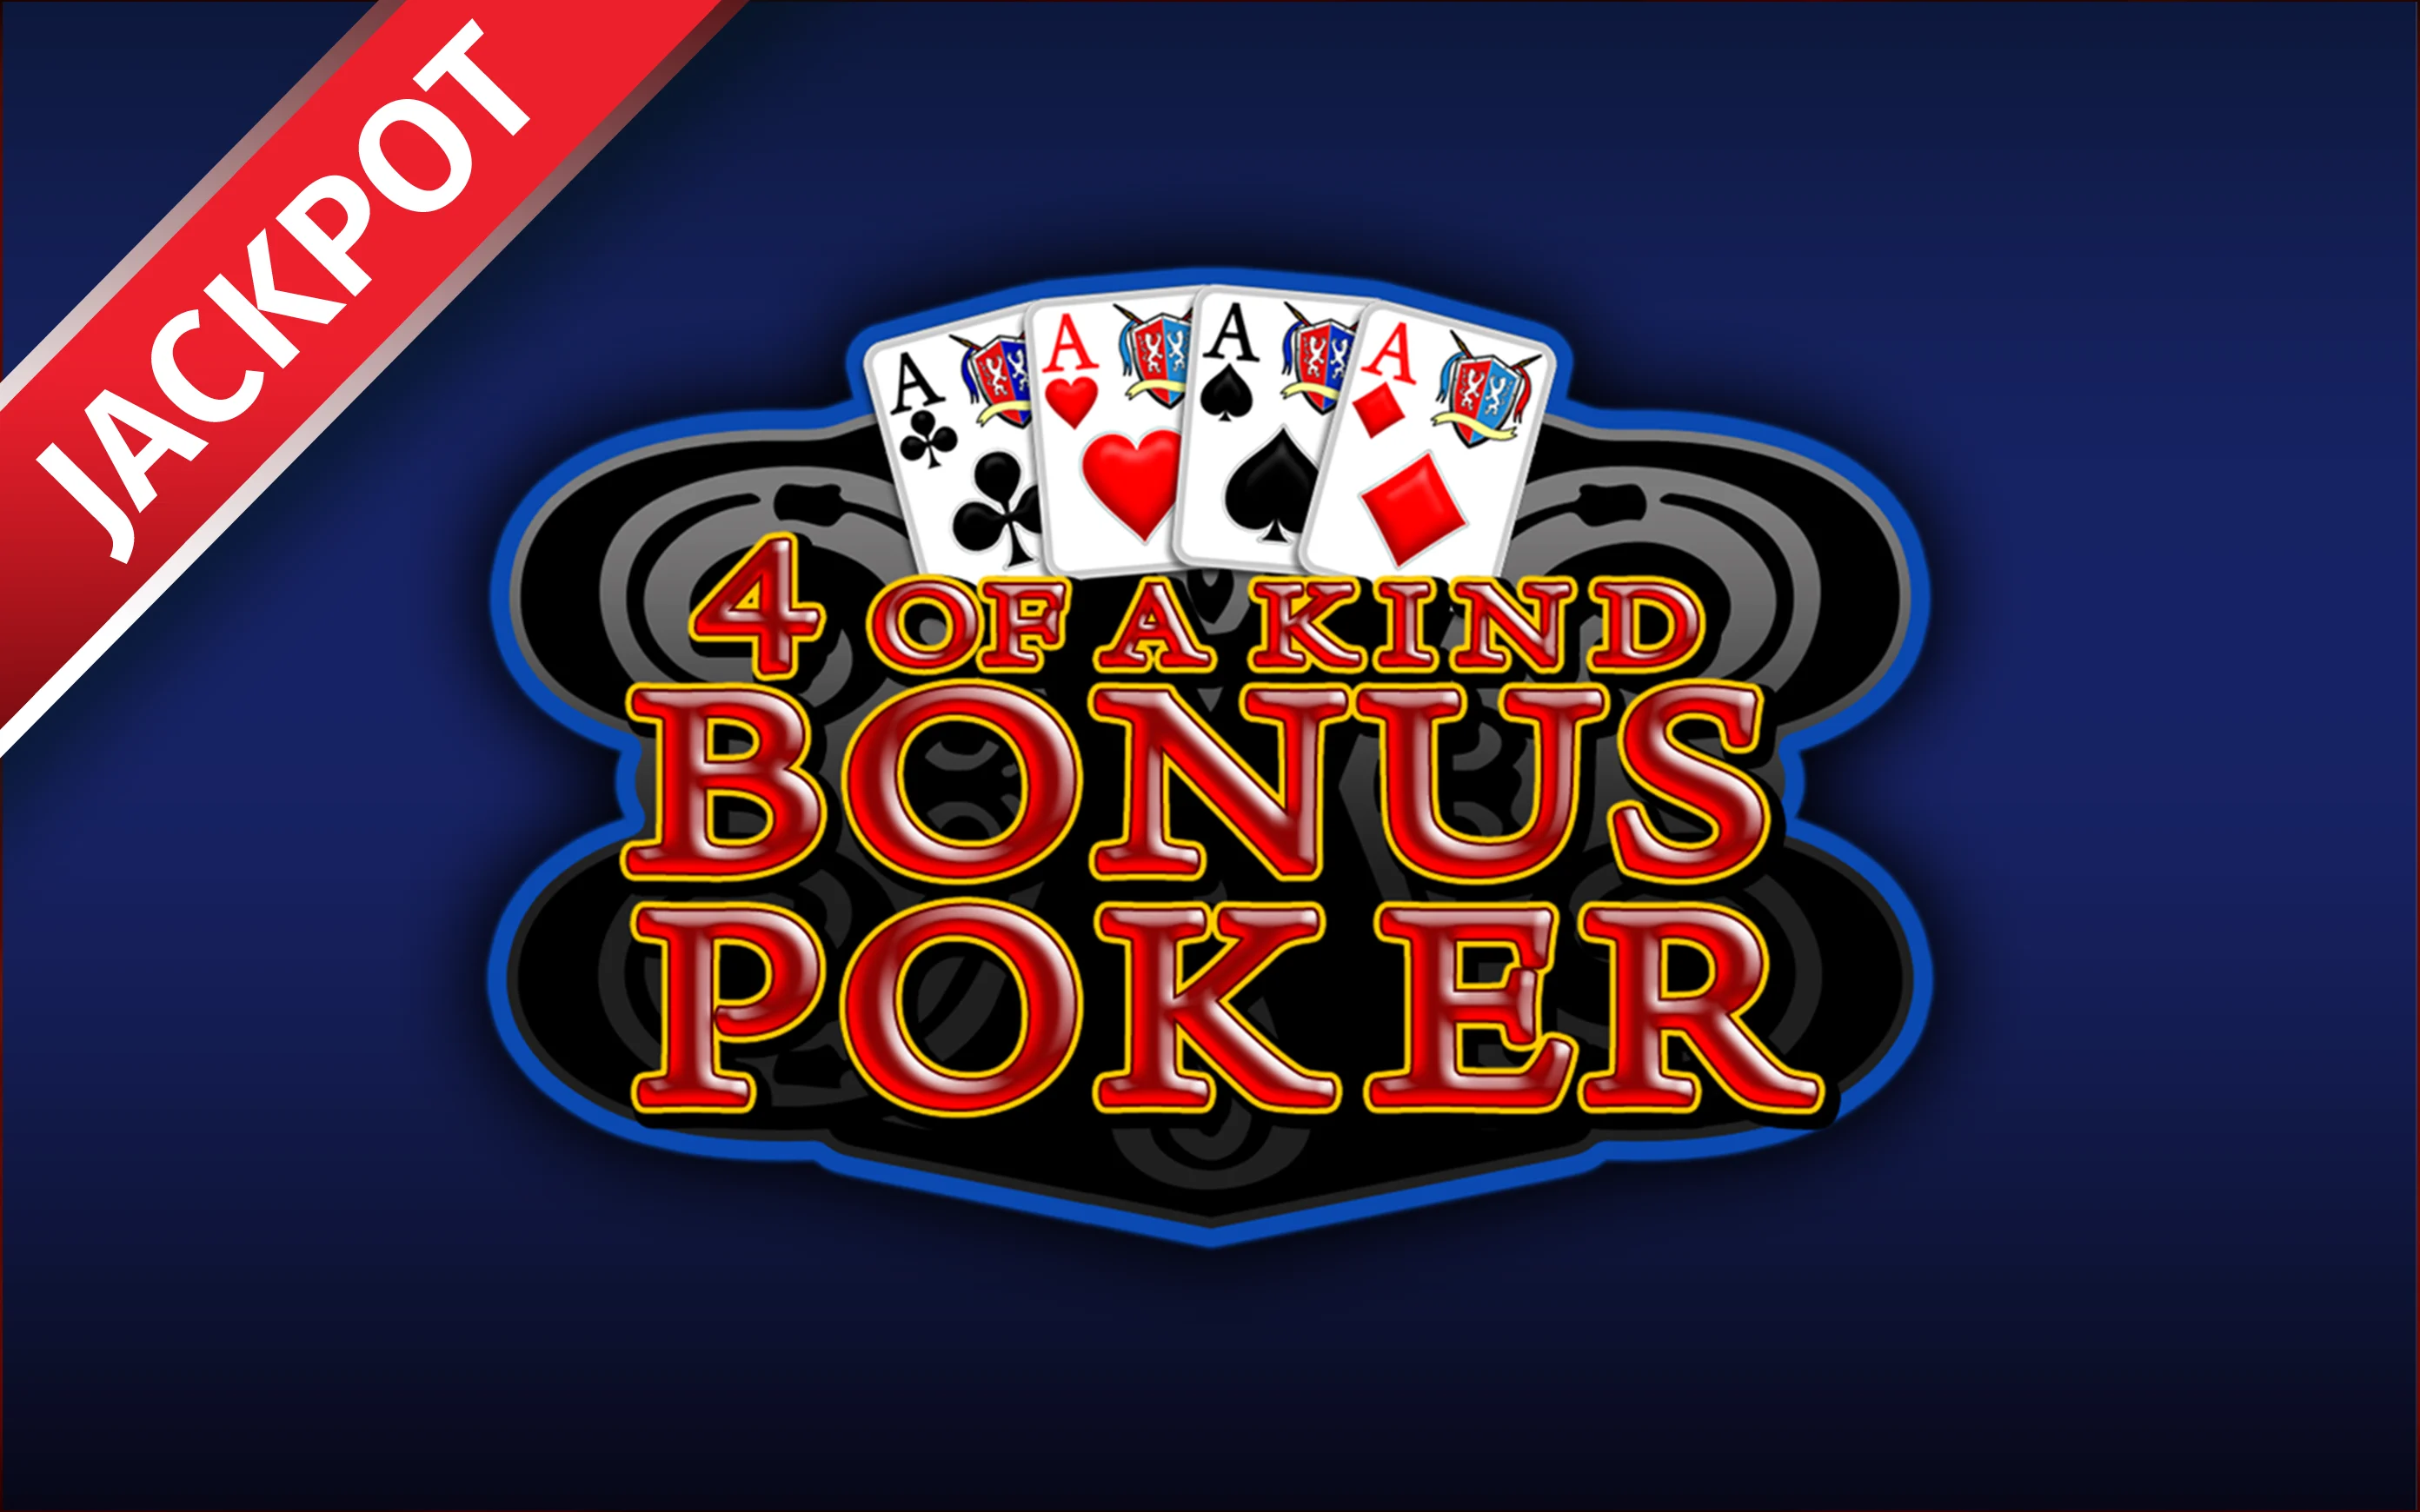 Juega a 4 of a kind Bonus Poker en el casino en línea de Starcasino.be